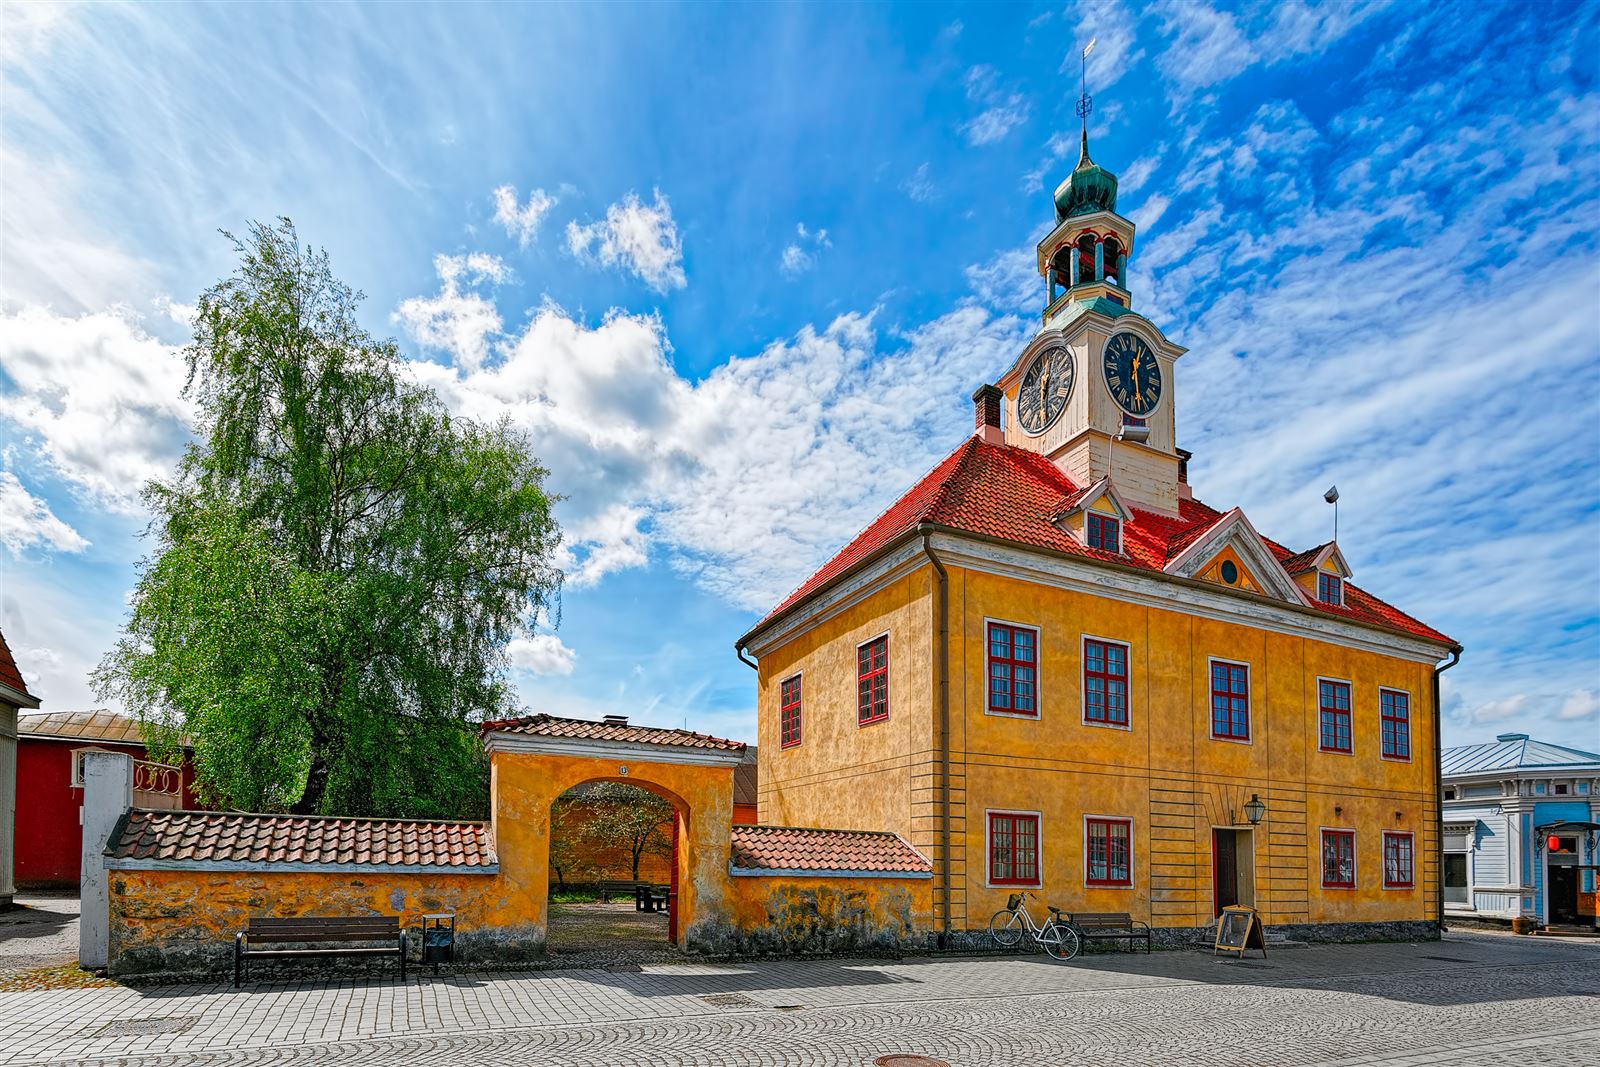 Rathaus in der Altstadt Rauma, Finnland